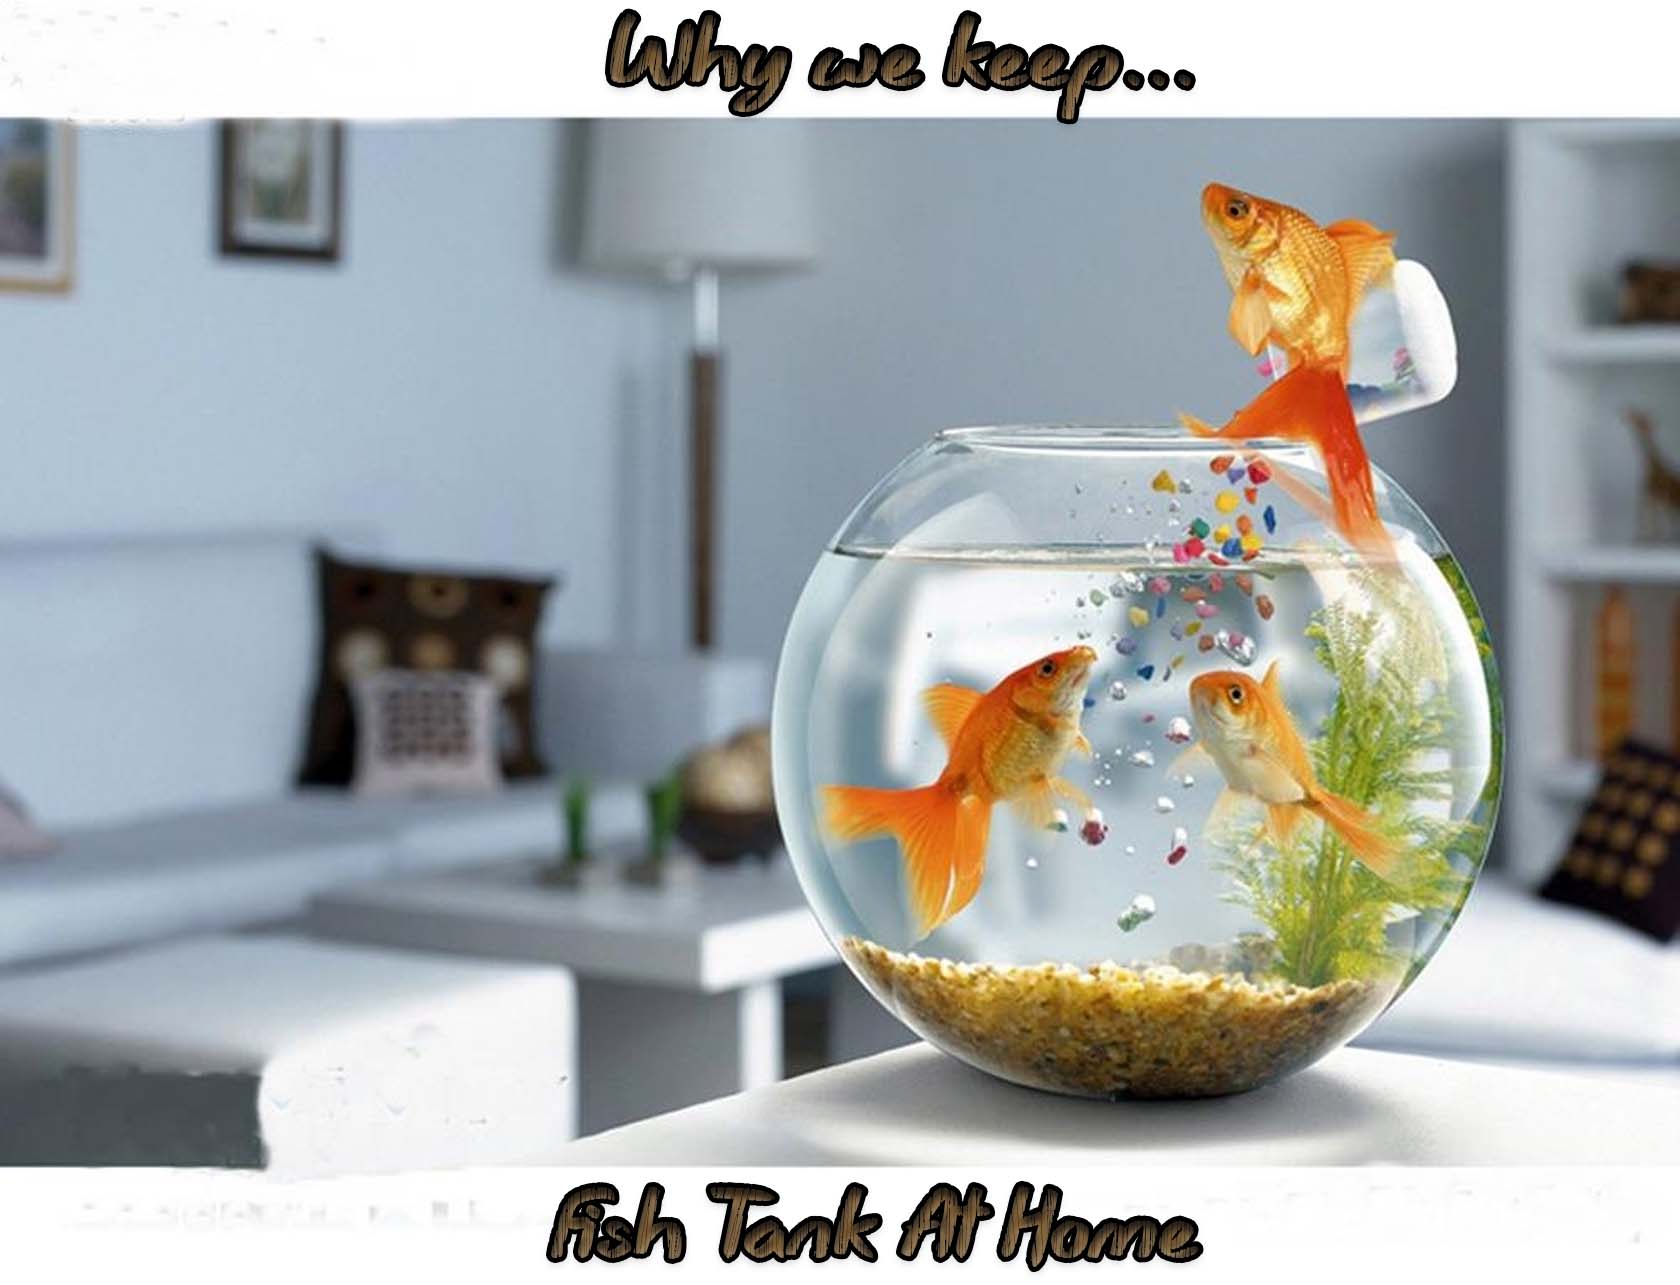 Fish Tank At Home